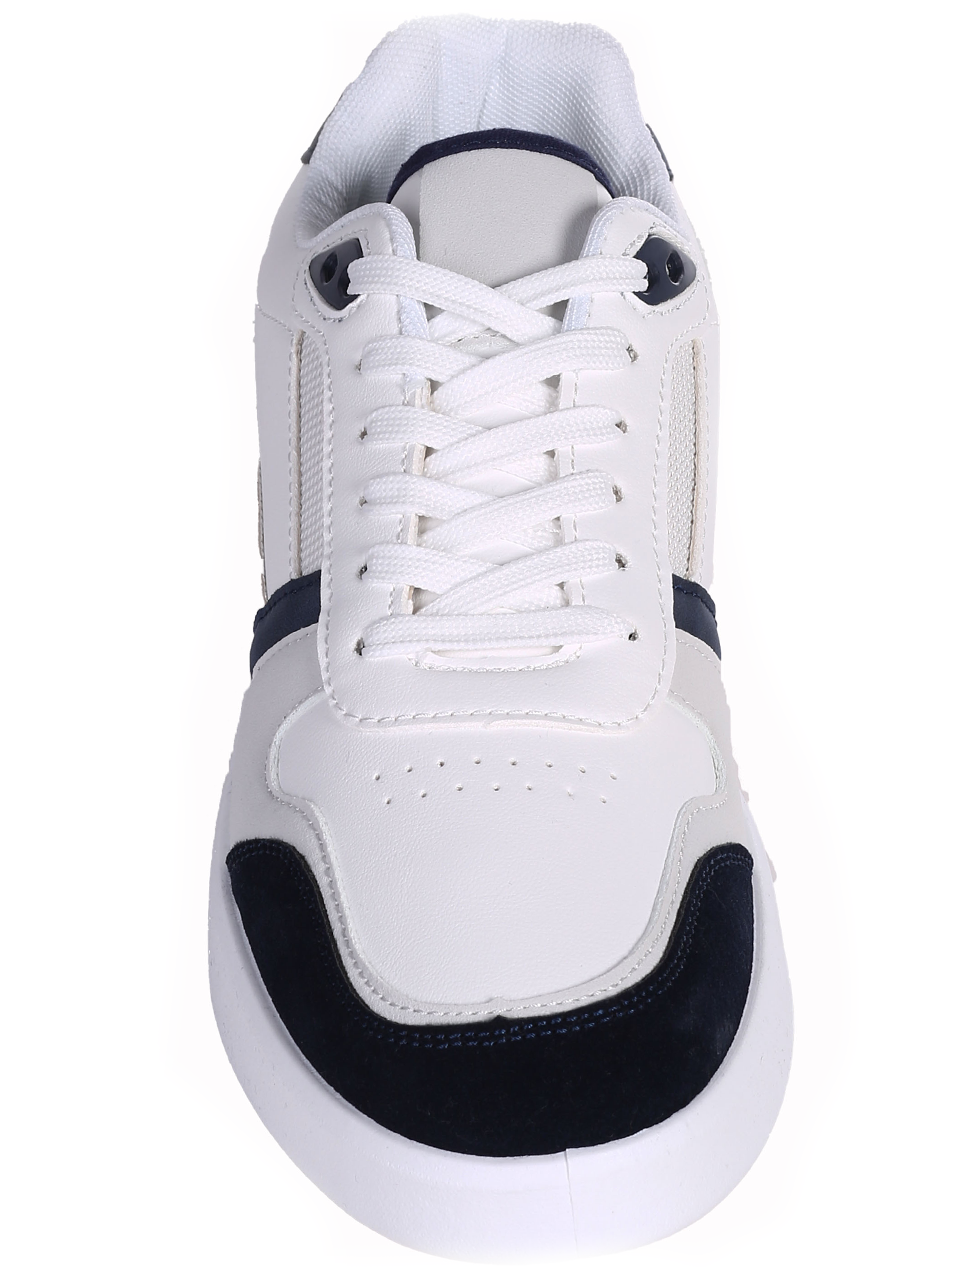 Eжедневни мъжки обувки в бял/син цвят 7U-24118 white/blue